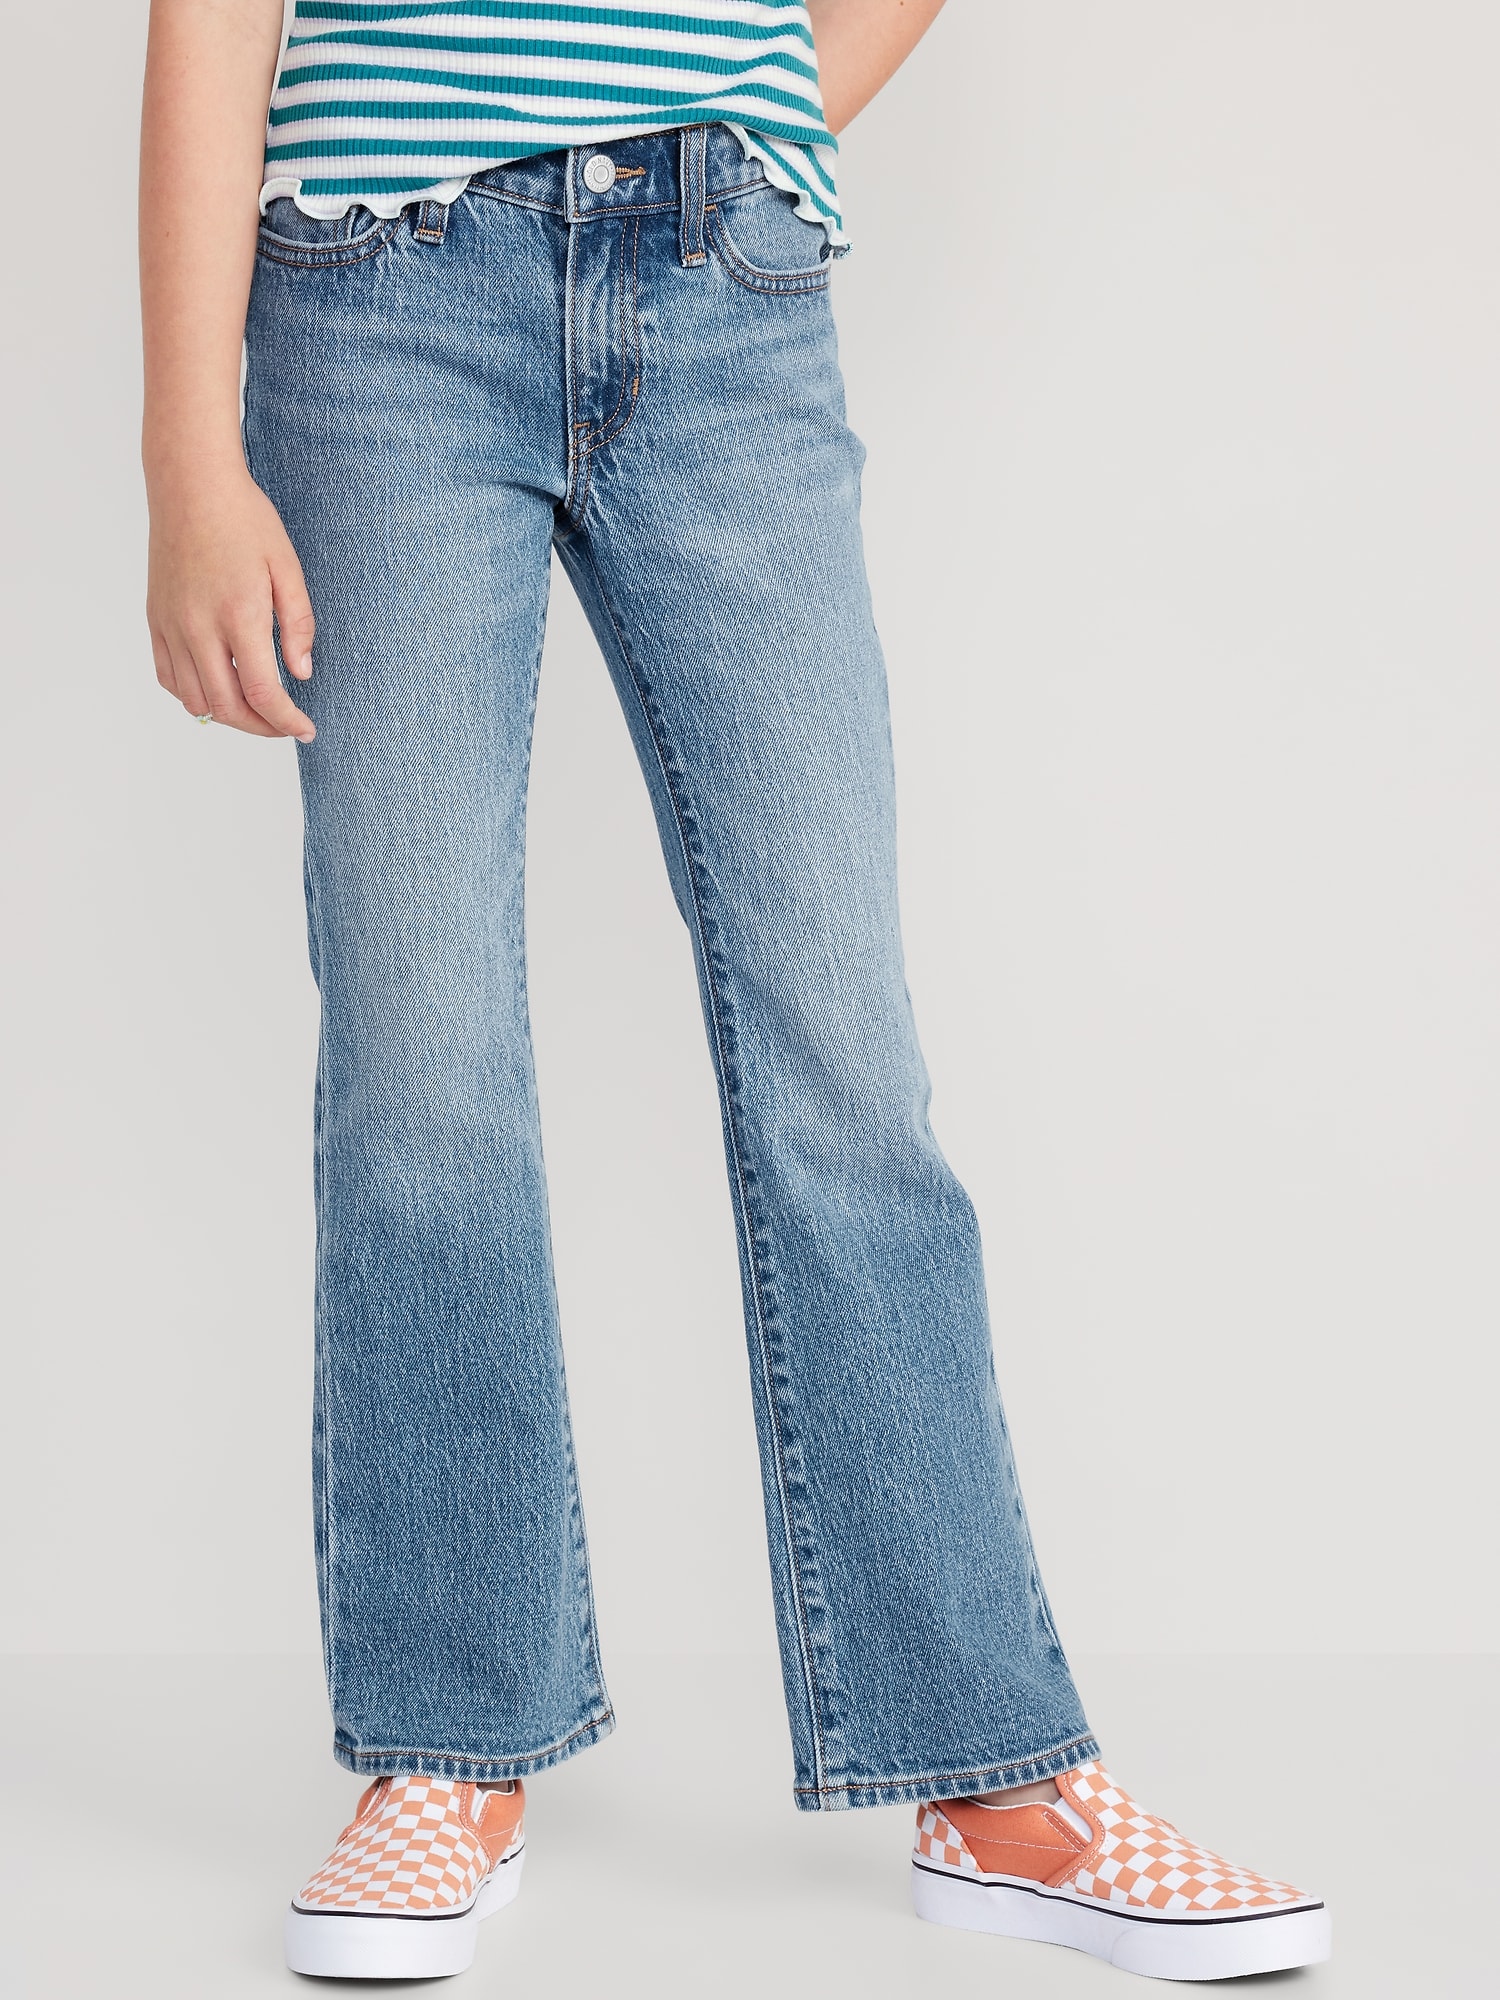 Women's 100% Cotton Mid Rise Bootcut Jeans